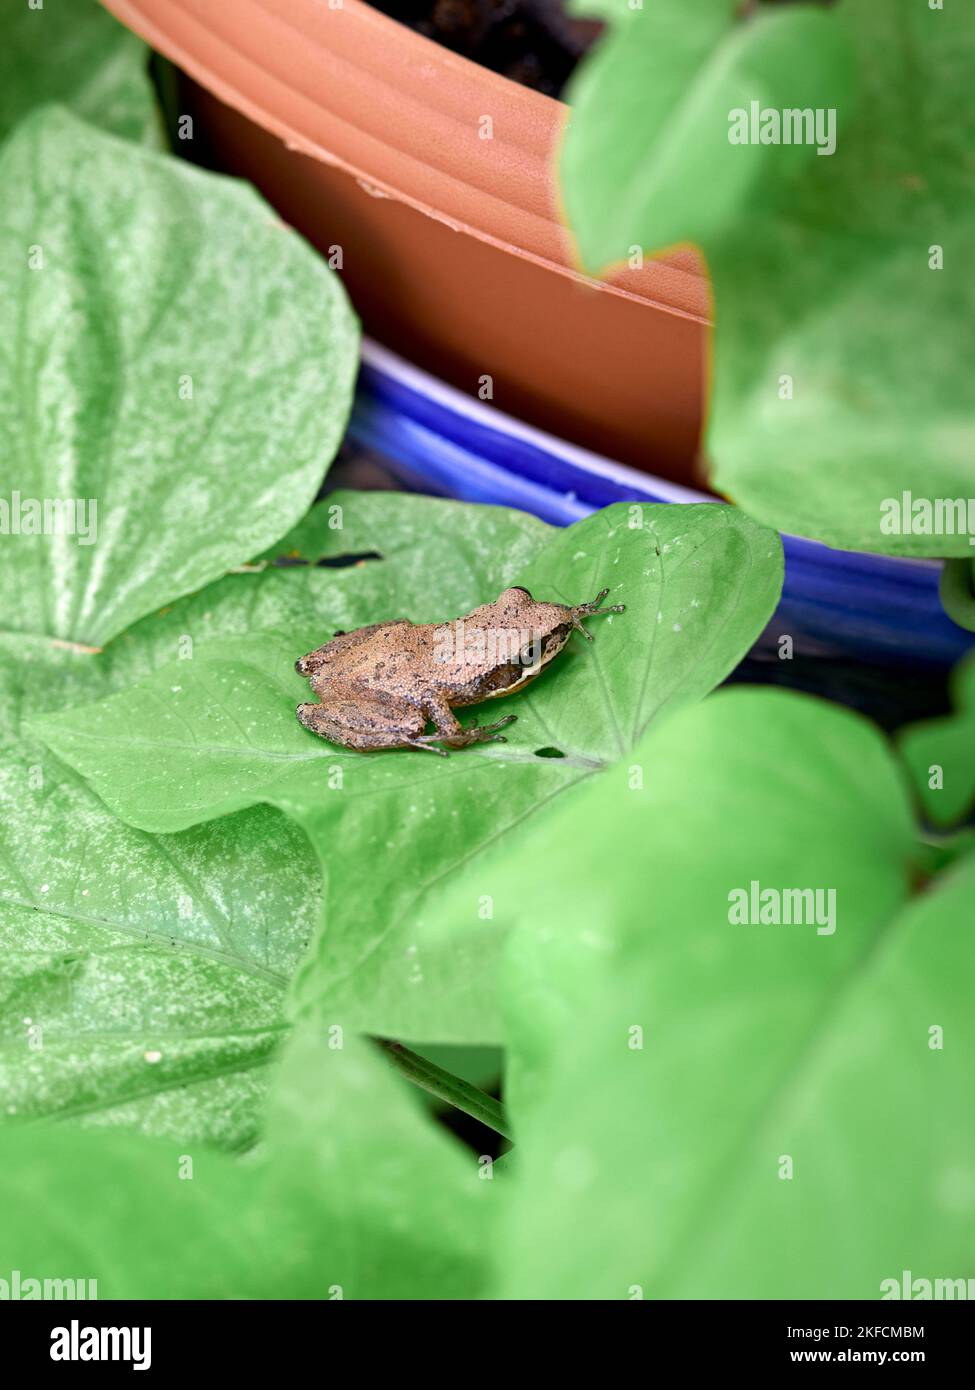 Rana marrone meridionale (Litoria ewingii), conosciuta anche come rana bruna, rana fischiante, o rana di Ewing su una foglia di pianta verde. Foto Stock